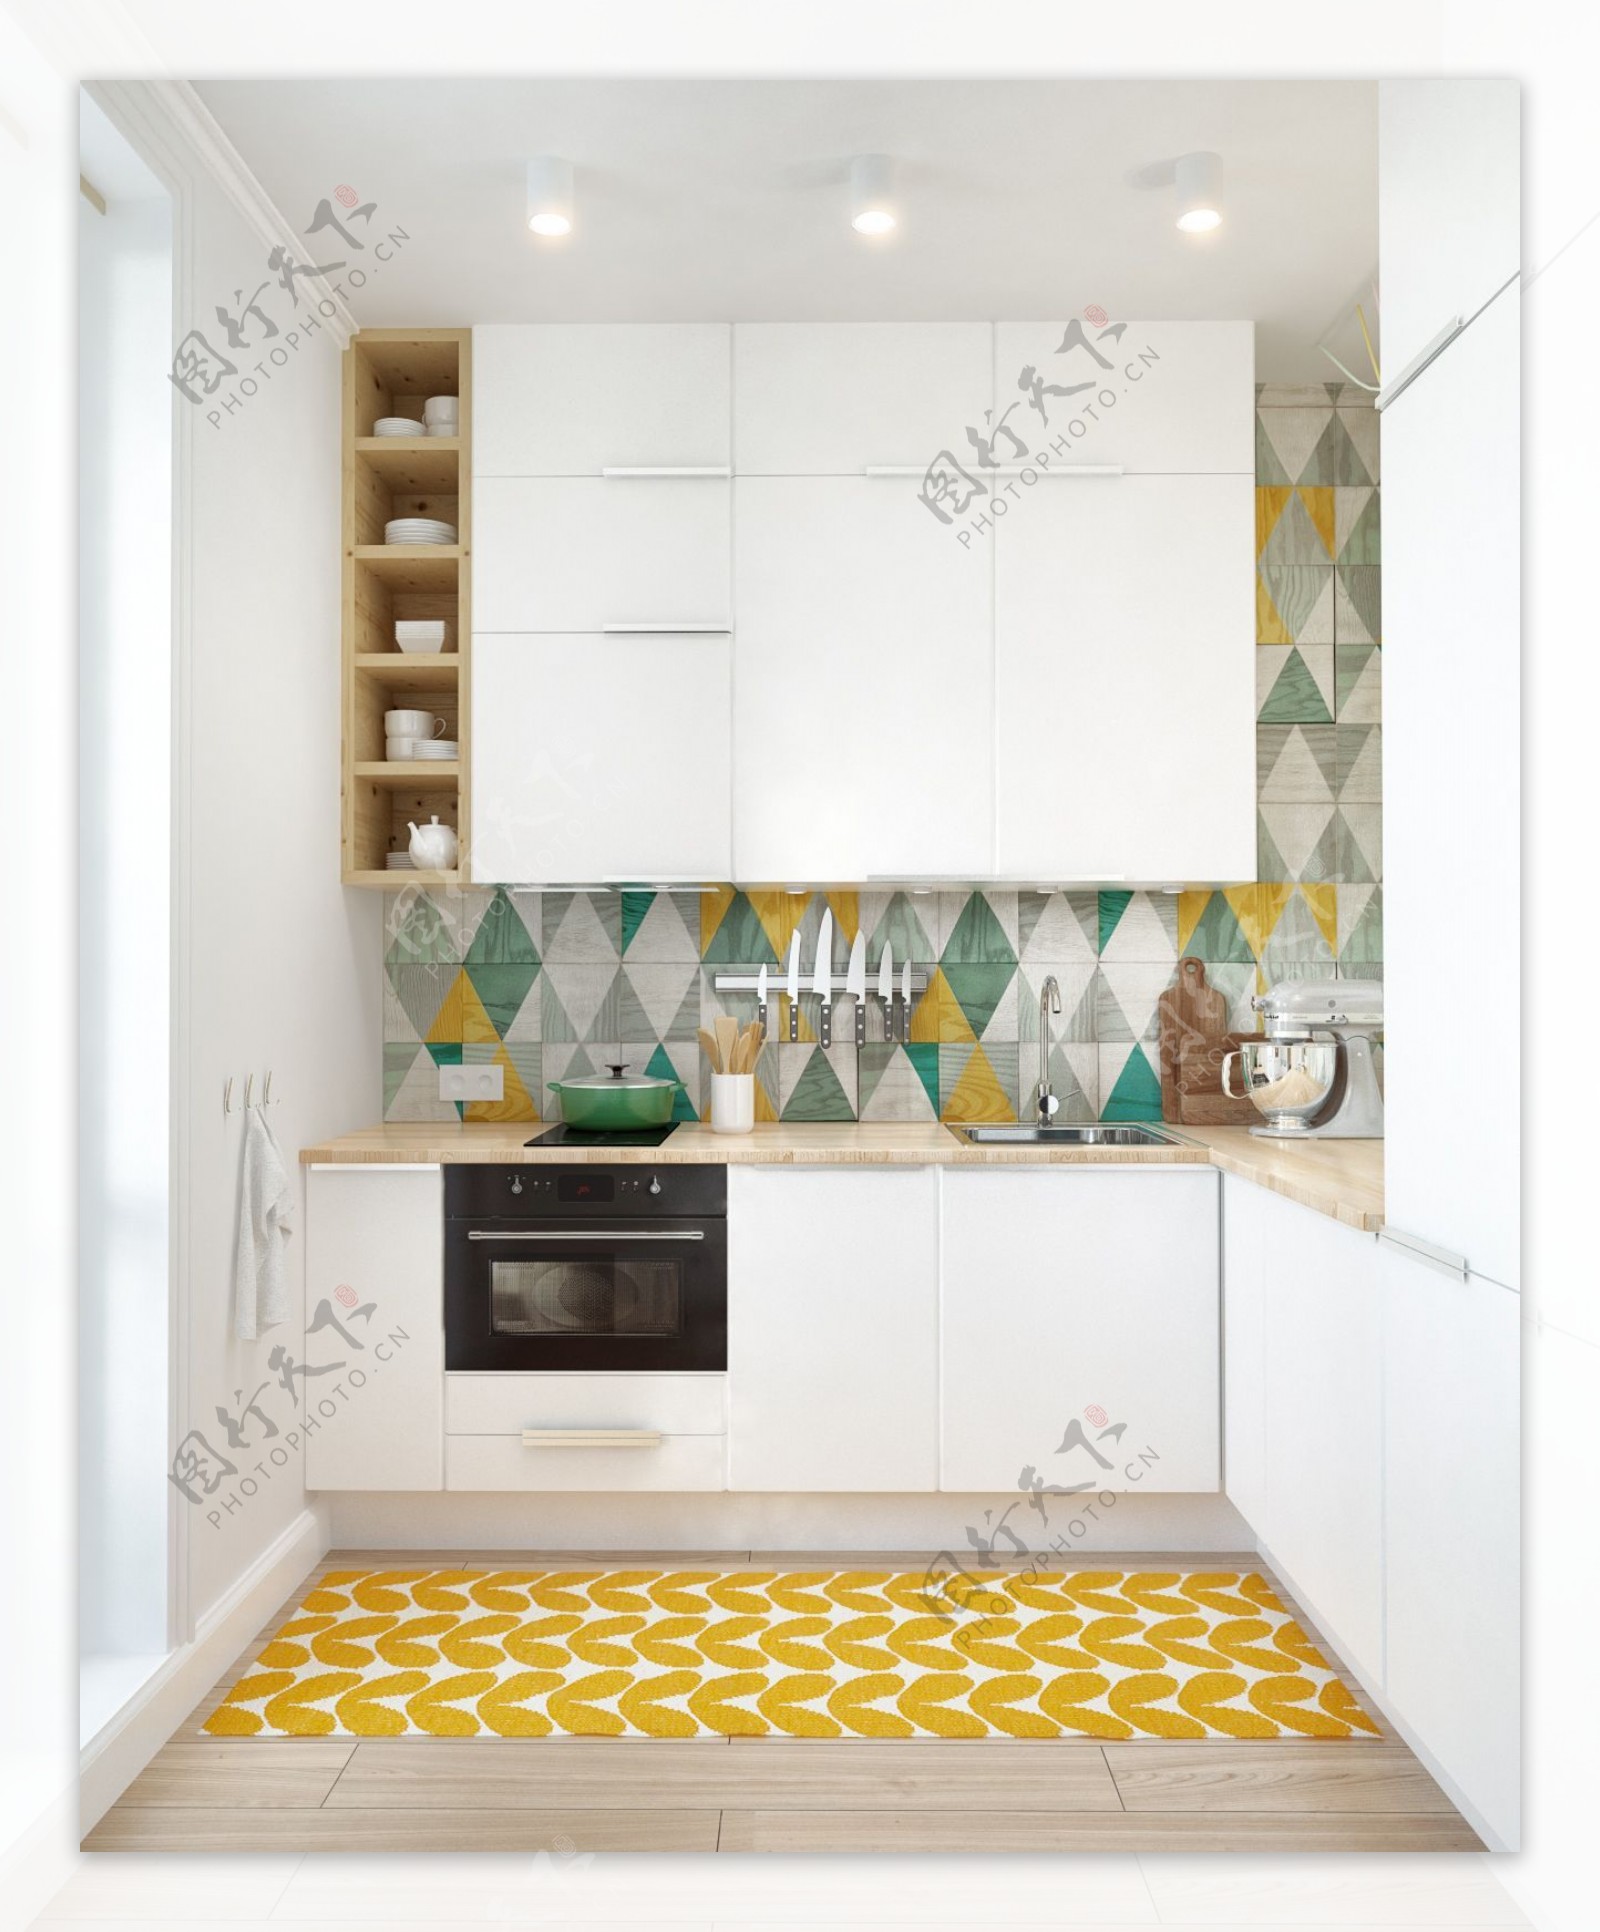 现代混搭风时尚厨房彩色菱形瓷砖装修效果图